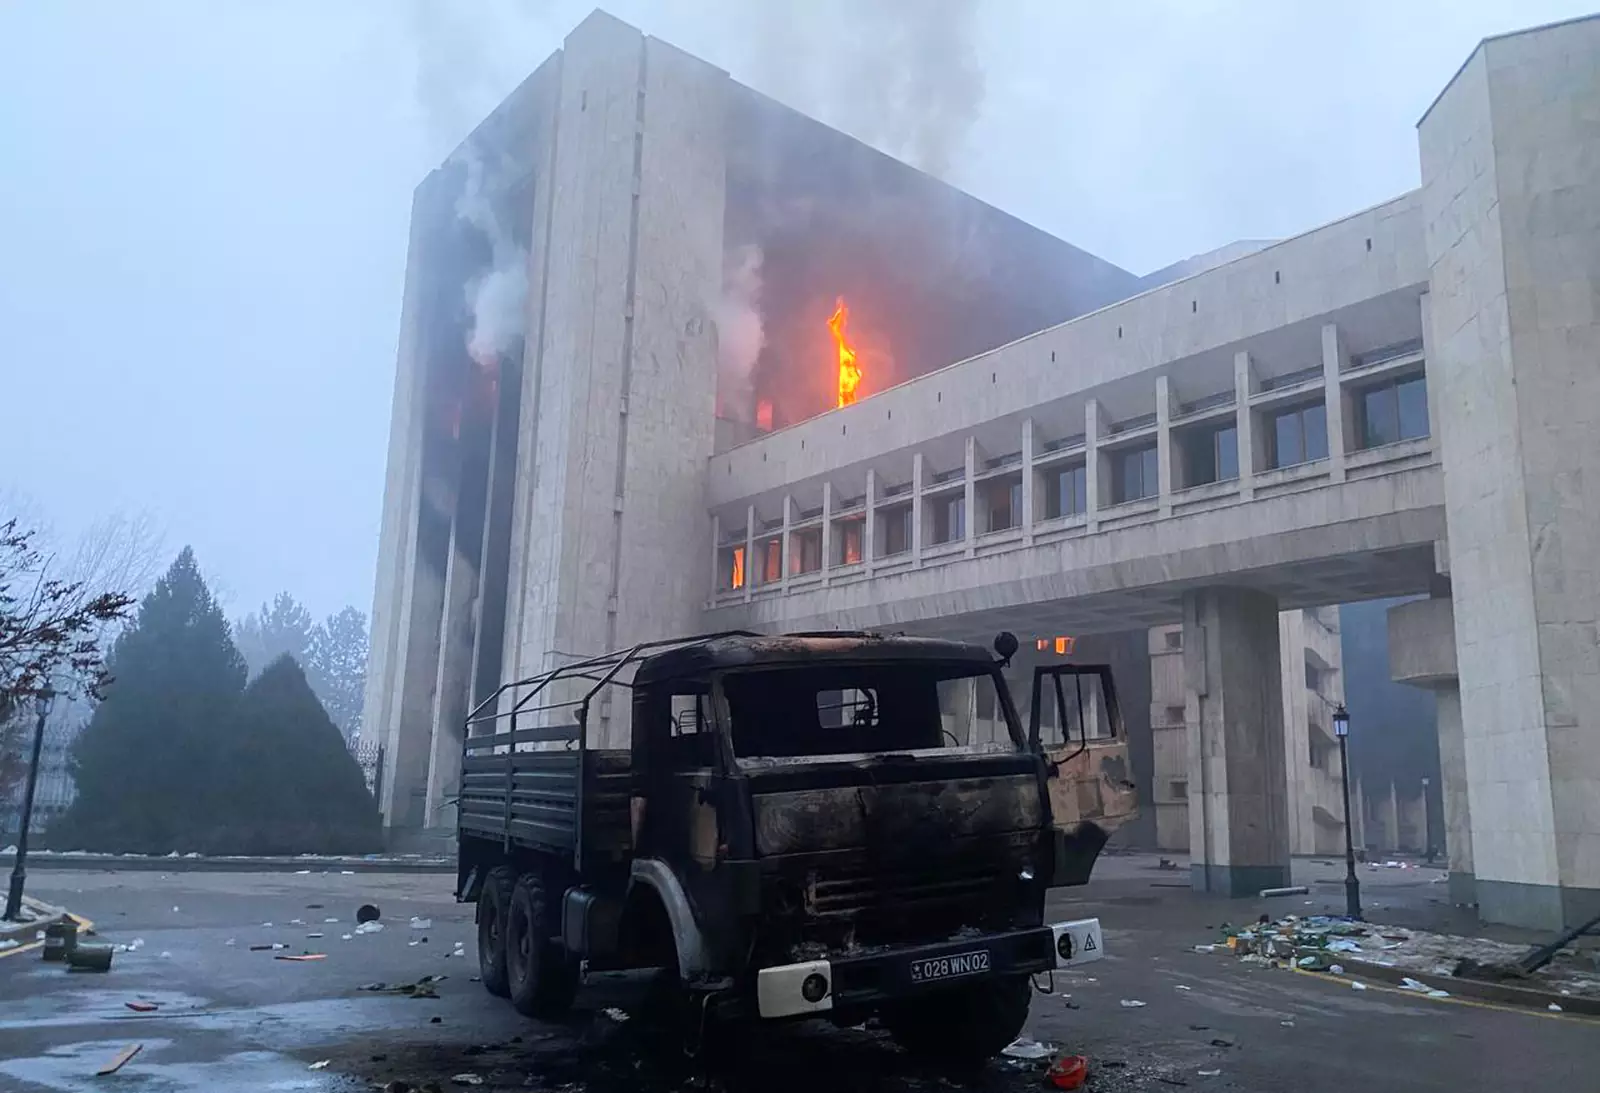 Казахстан. Алма-Ата. Сгоревший грузовой автомобиль возле здания мэрии (акимат). 